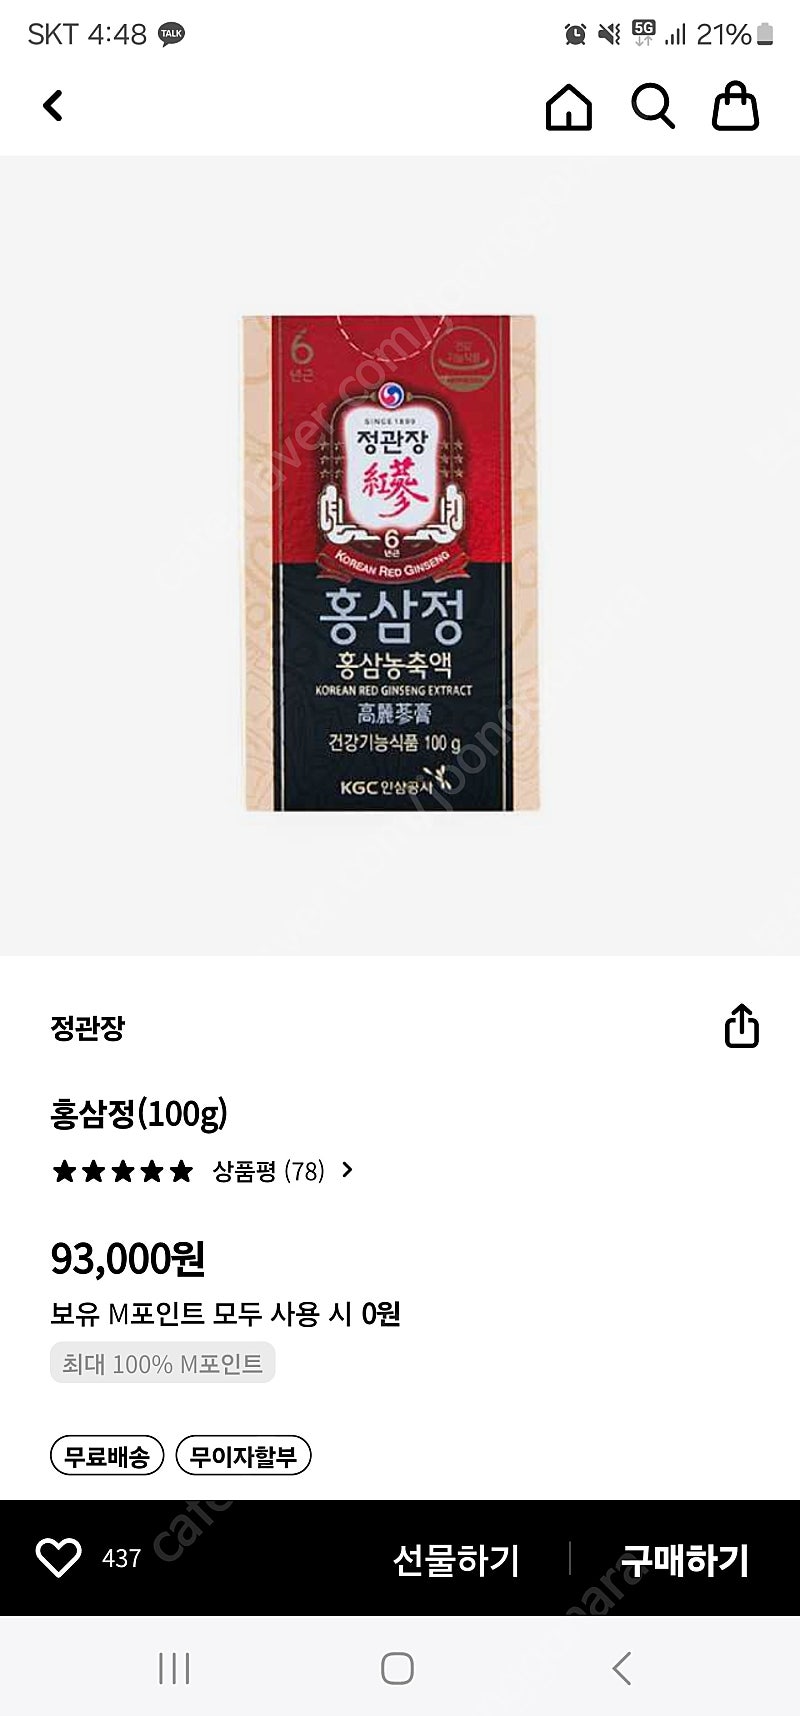 정관장 홍삼정(100g) 팝니다 택배전송